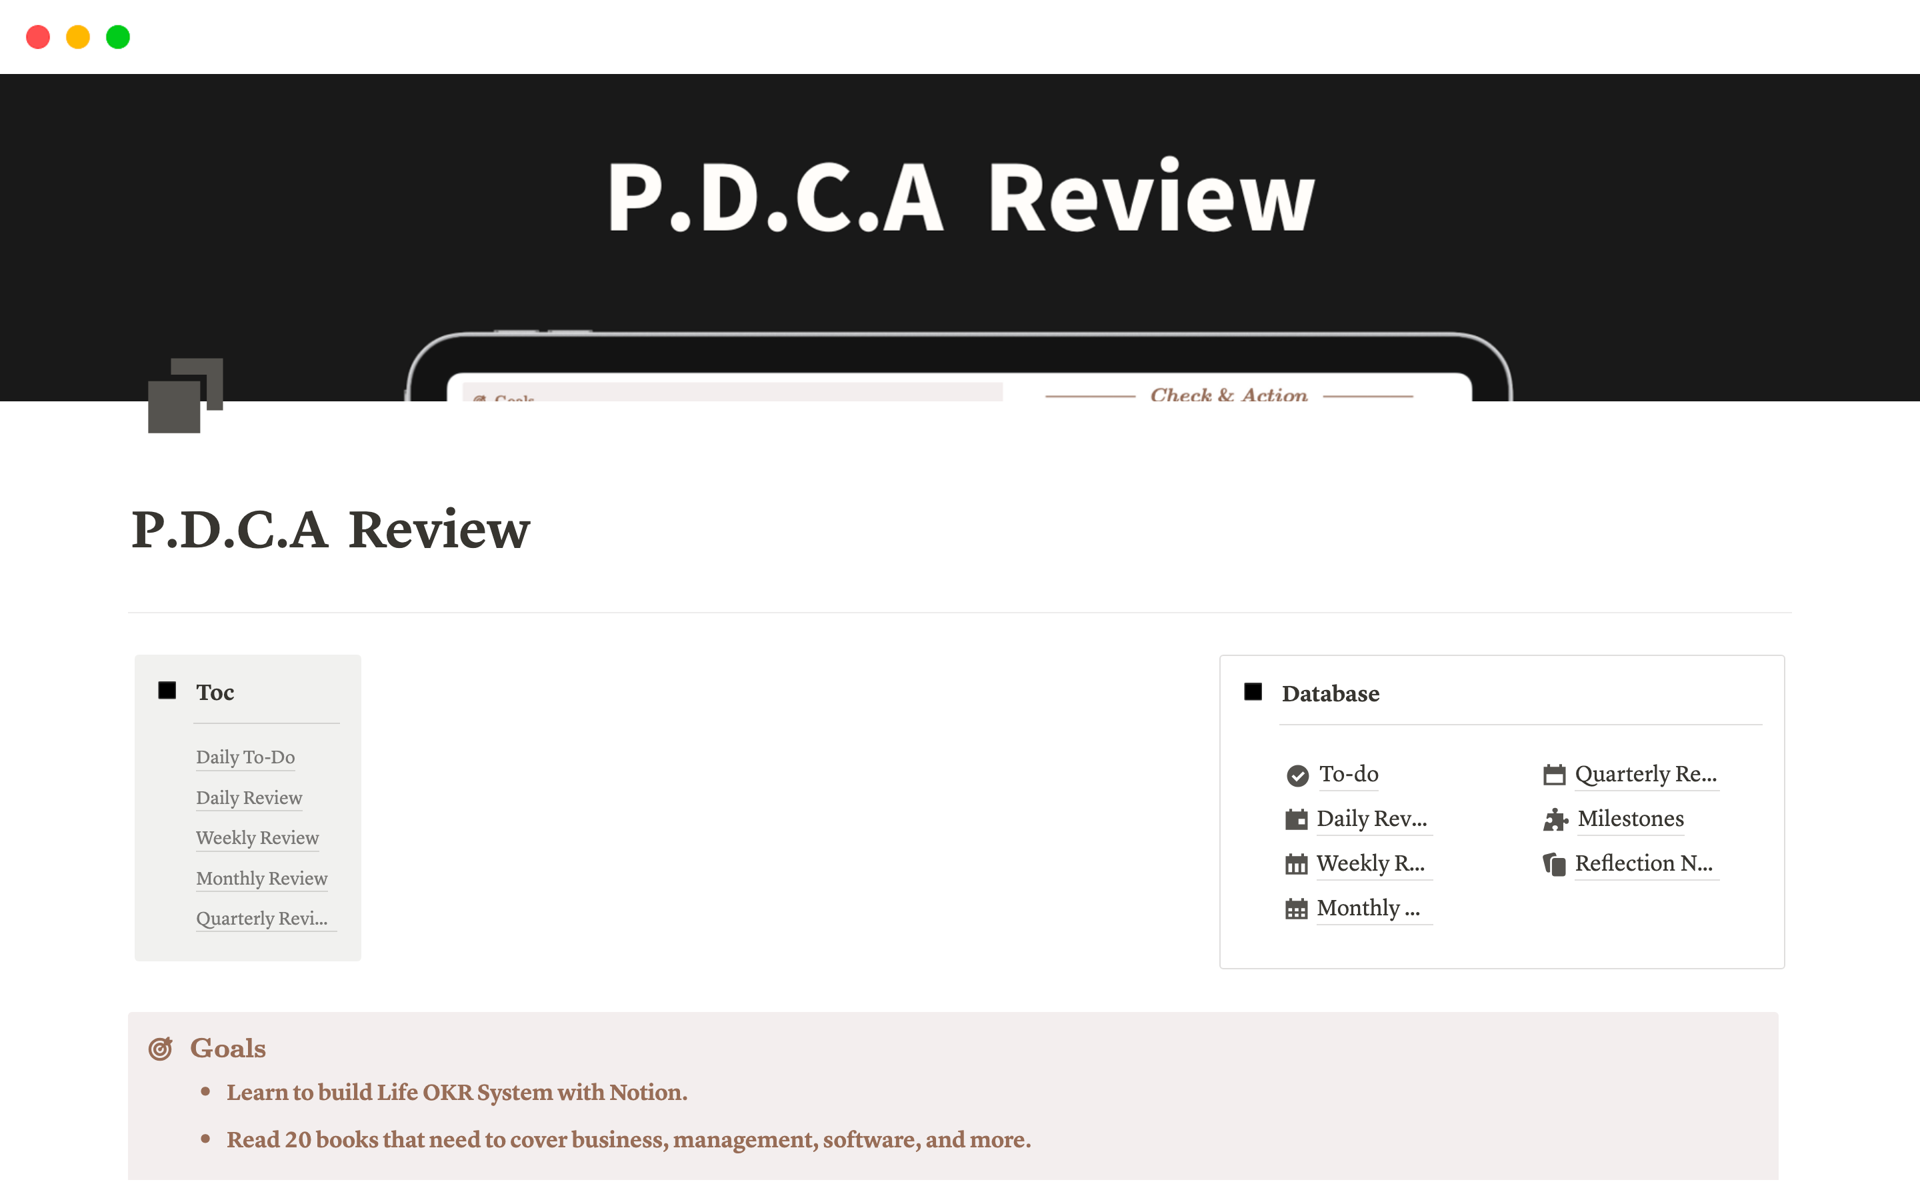 Vista previa de una plantilla para P.D.C.A  Review